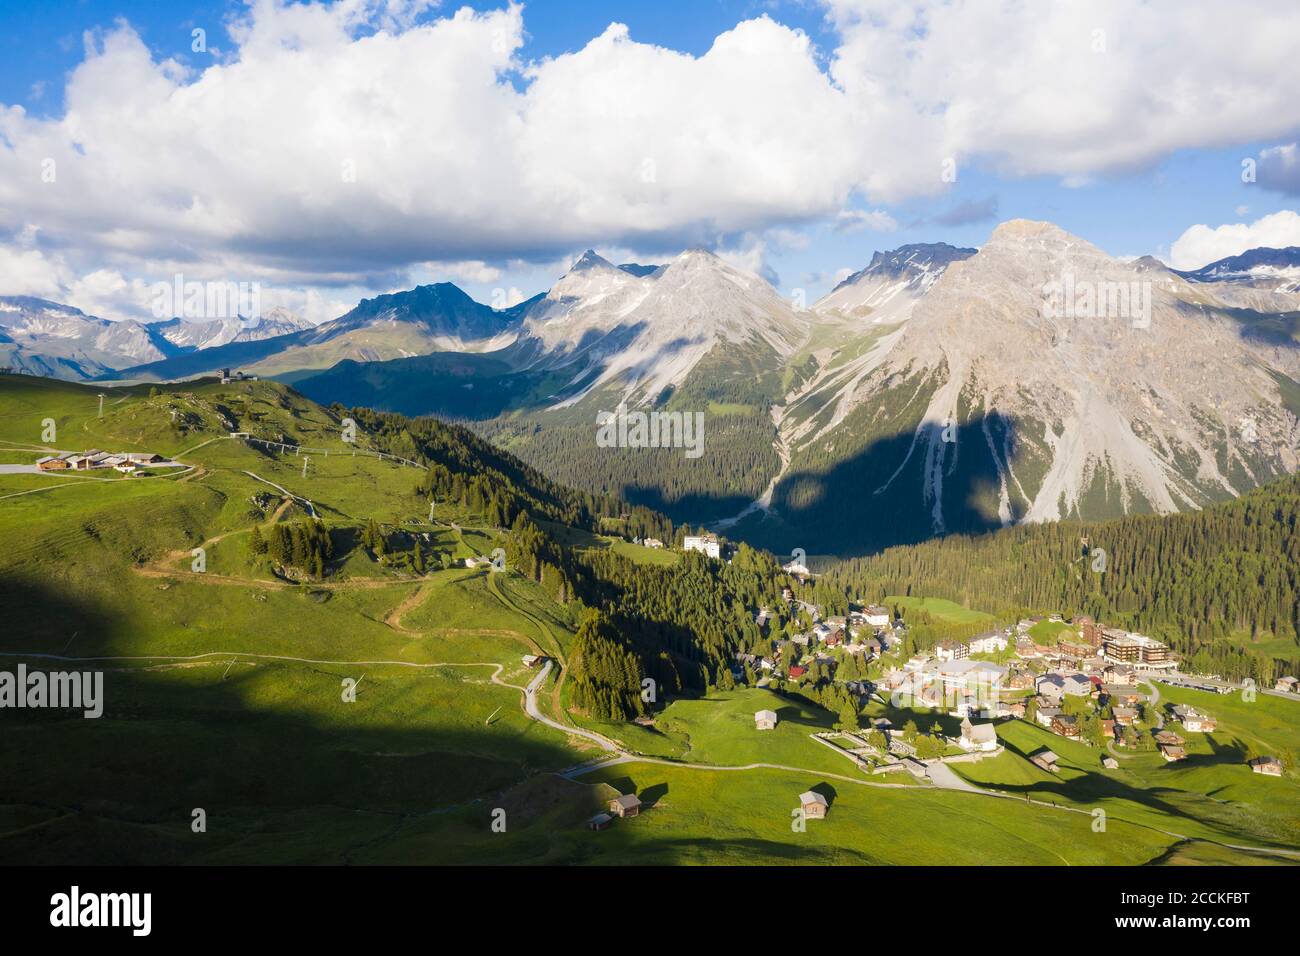 Suisse, canton des Grisons, Arosa, vue aérienne de la station de montagne en été Banque D'Images